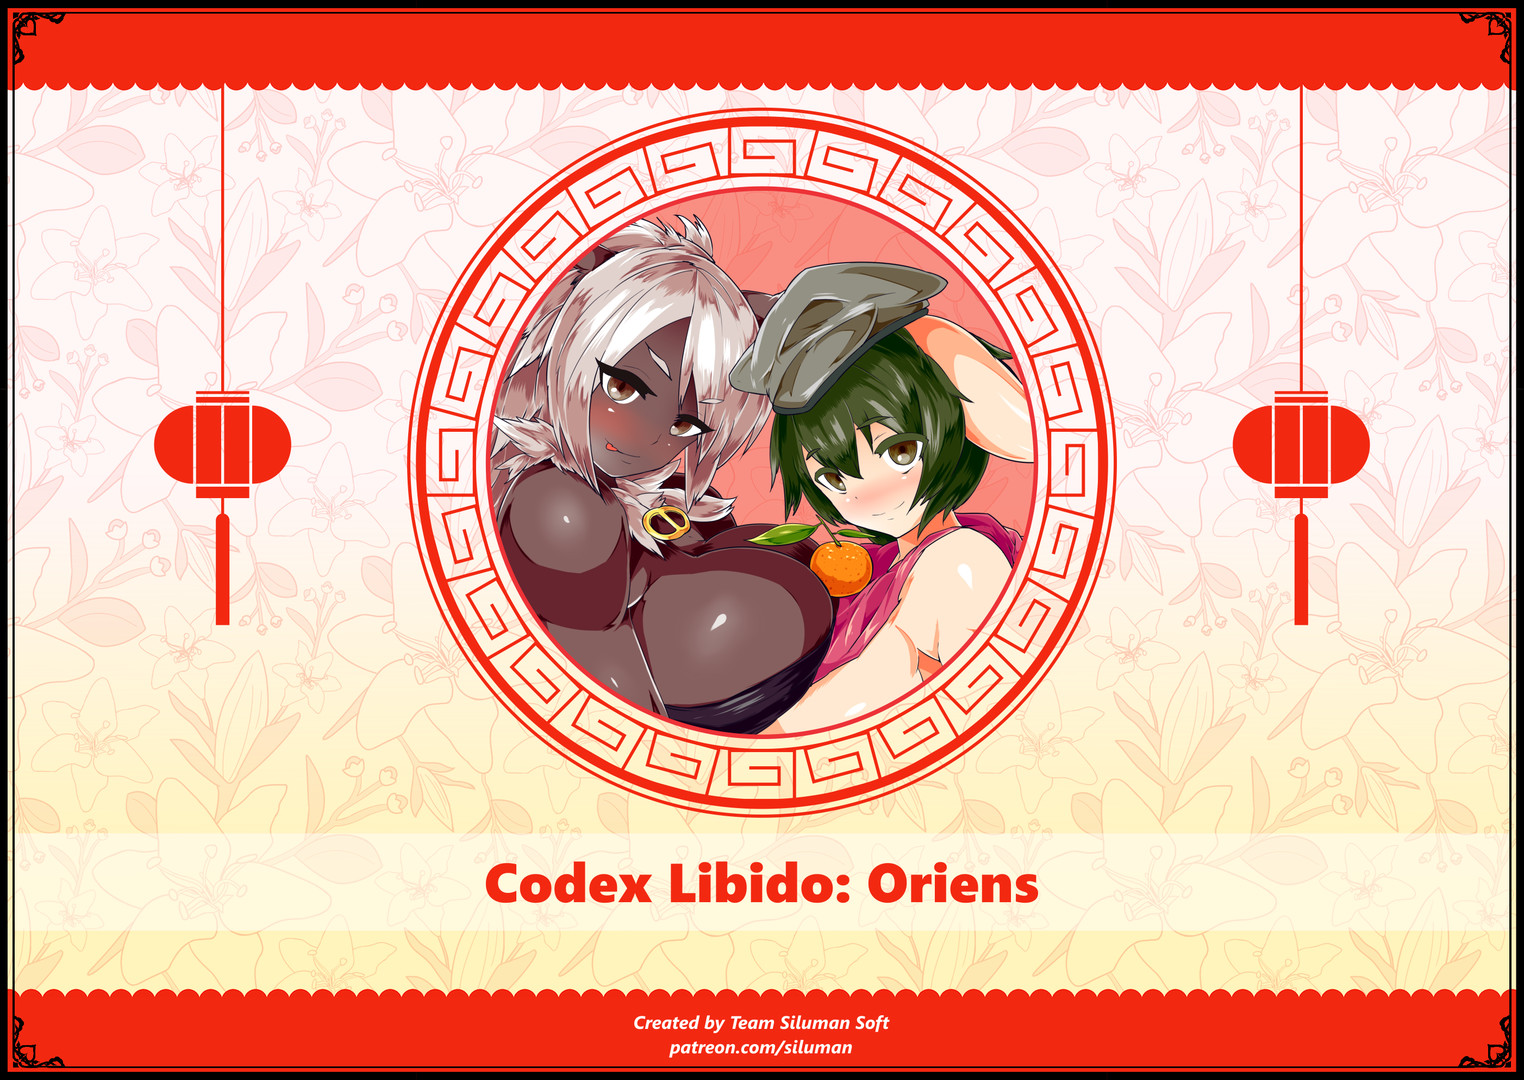 Codex Libido : Oriens DLC Steam CD Key 5.64 $